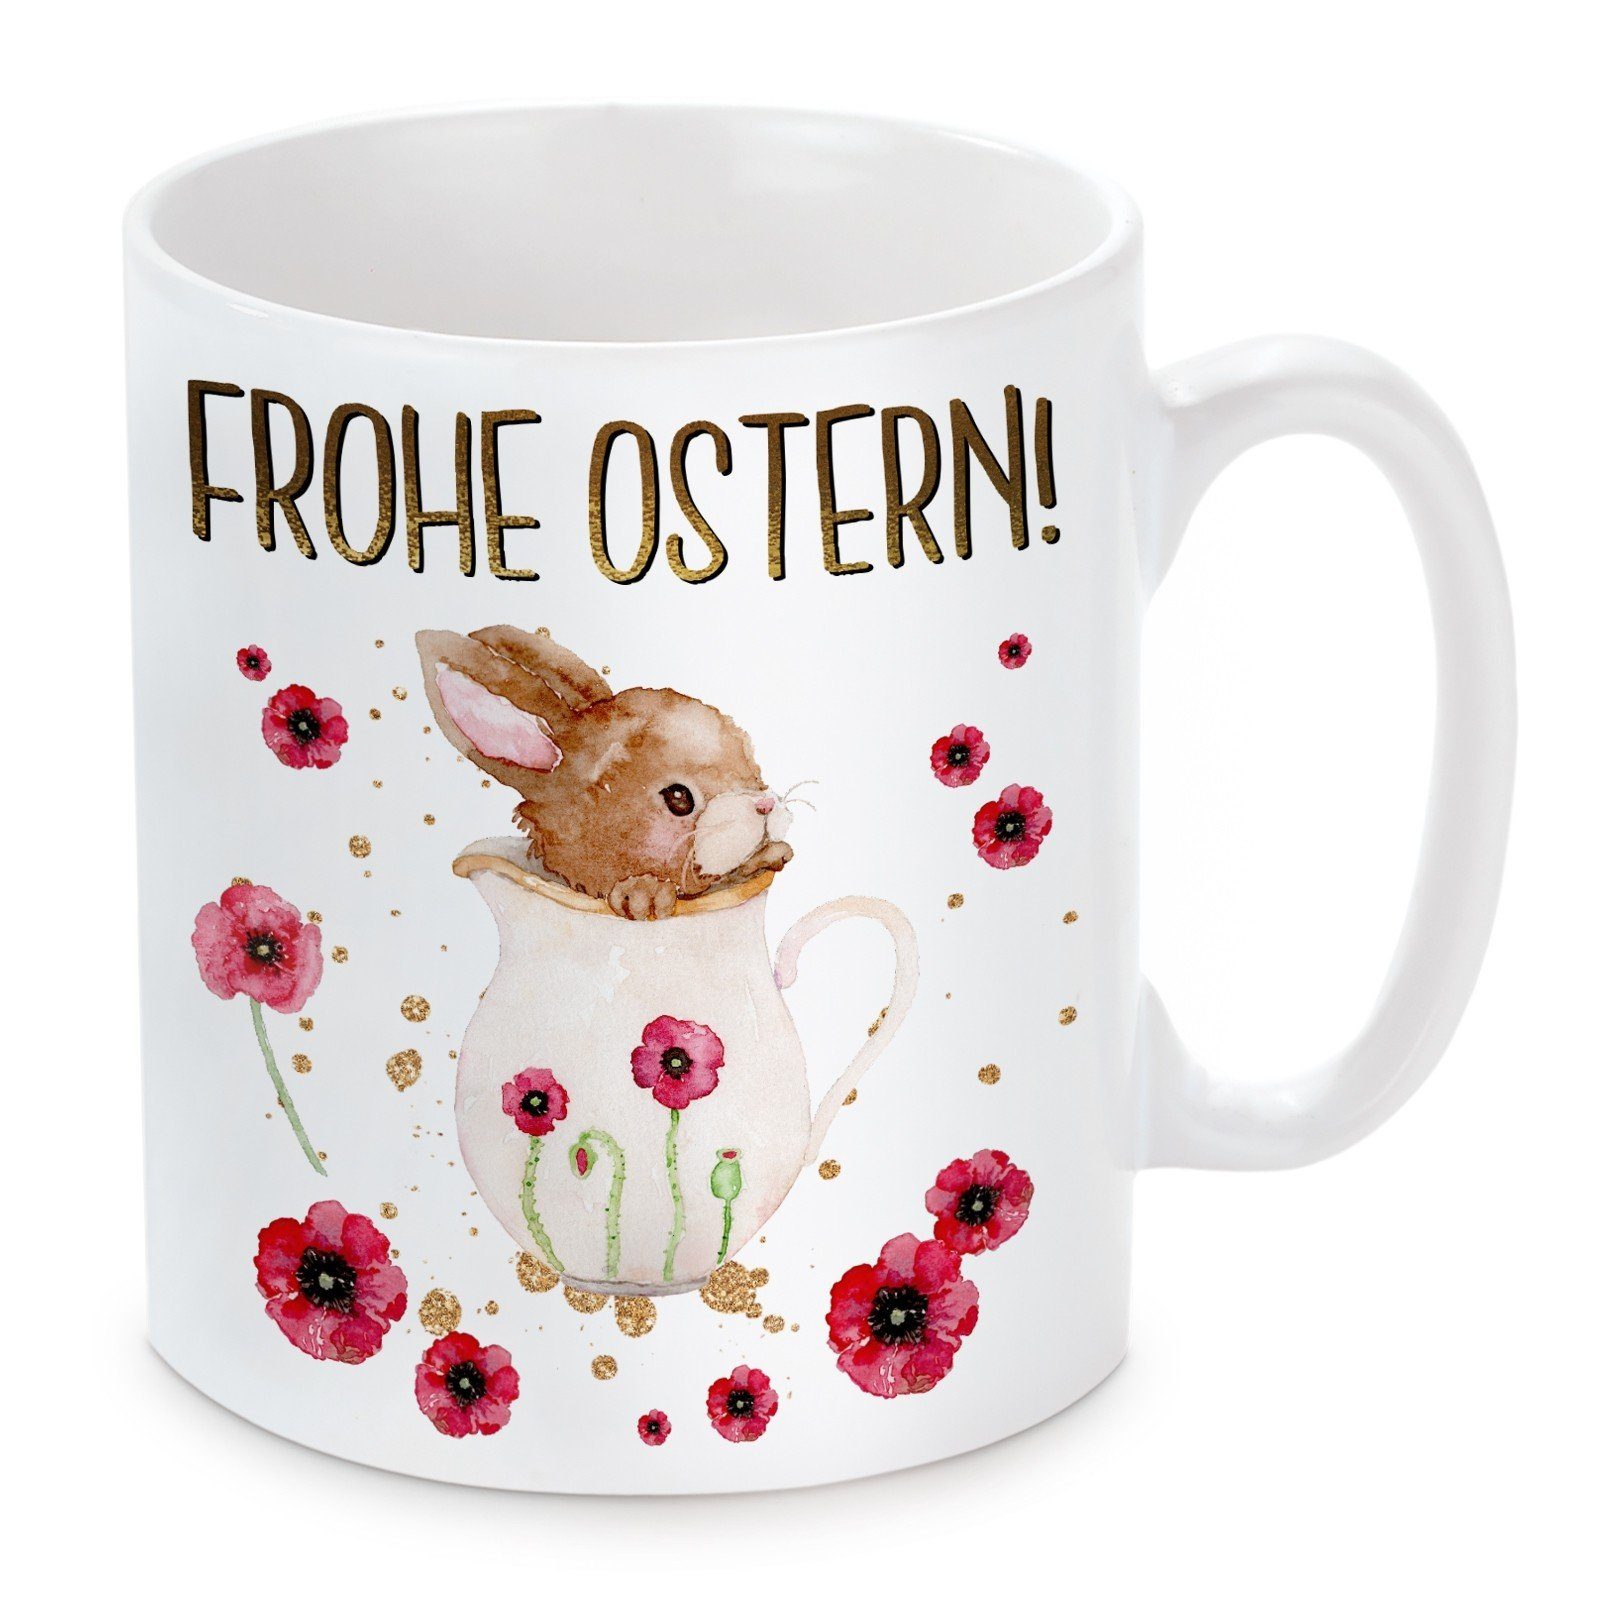 Frohe Herzbotschaft Keramik, Kaffeebecher und Kaffeetasse Tasse Motiv mit Ostern!, mikrowellengeeignet spülmaschinenfest